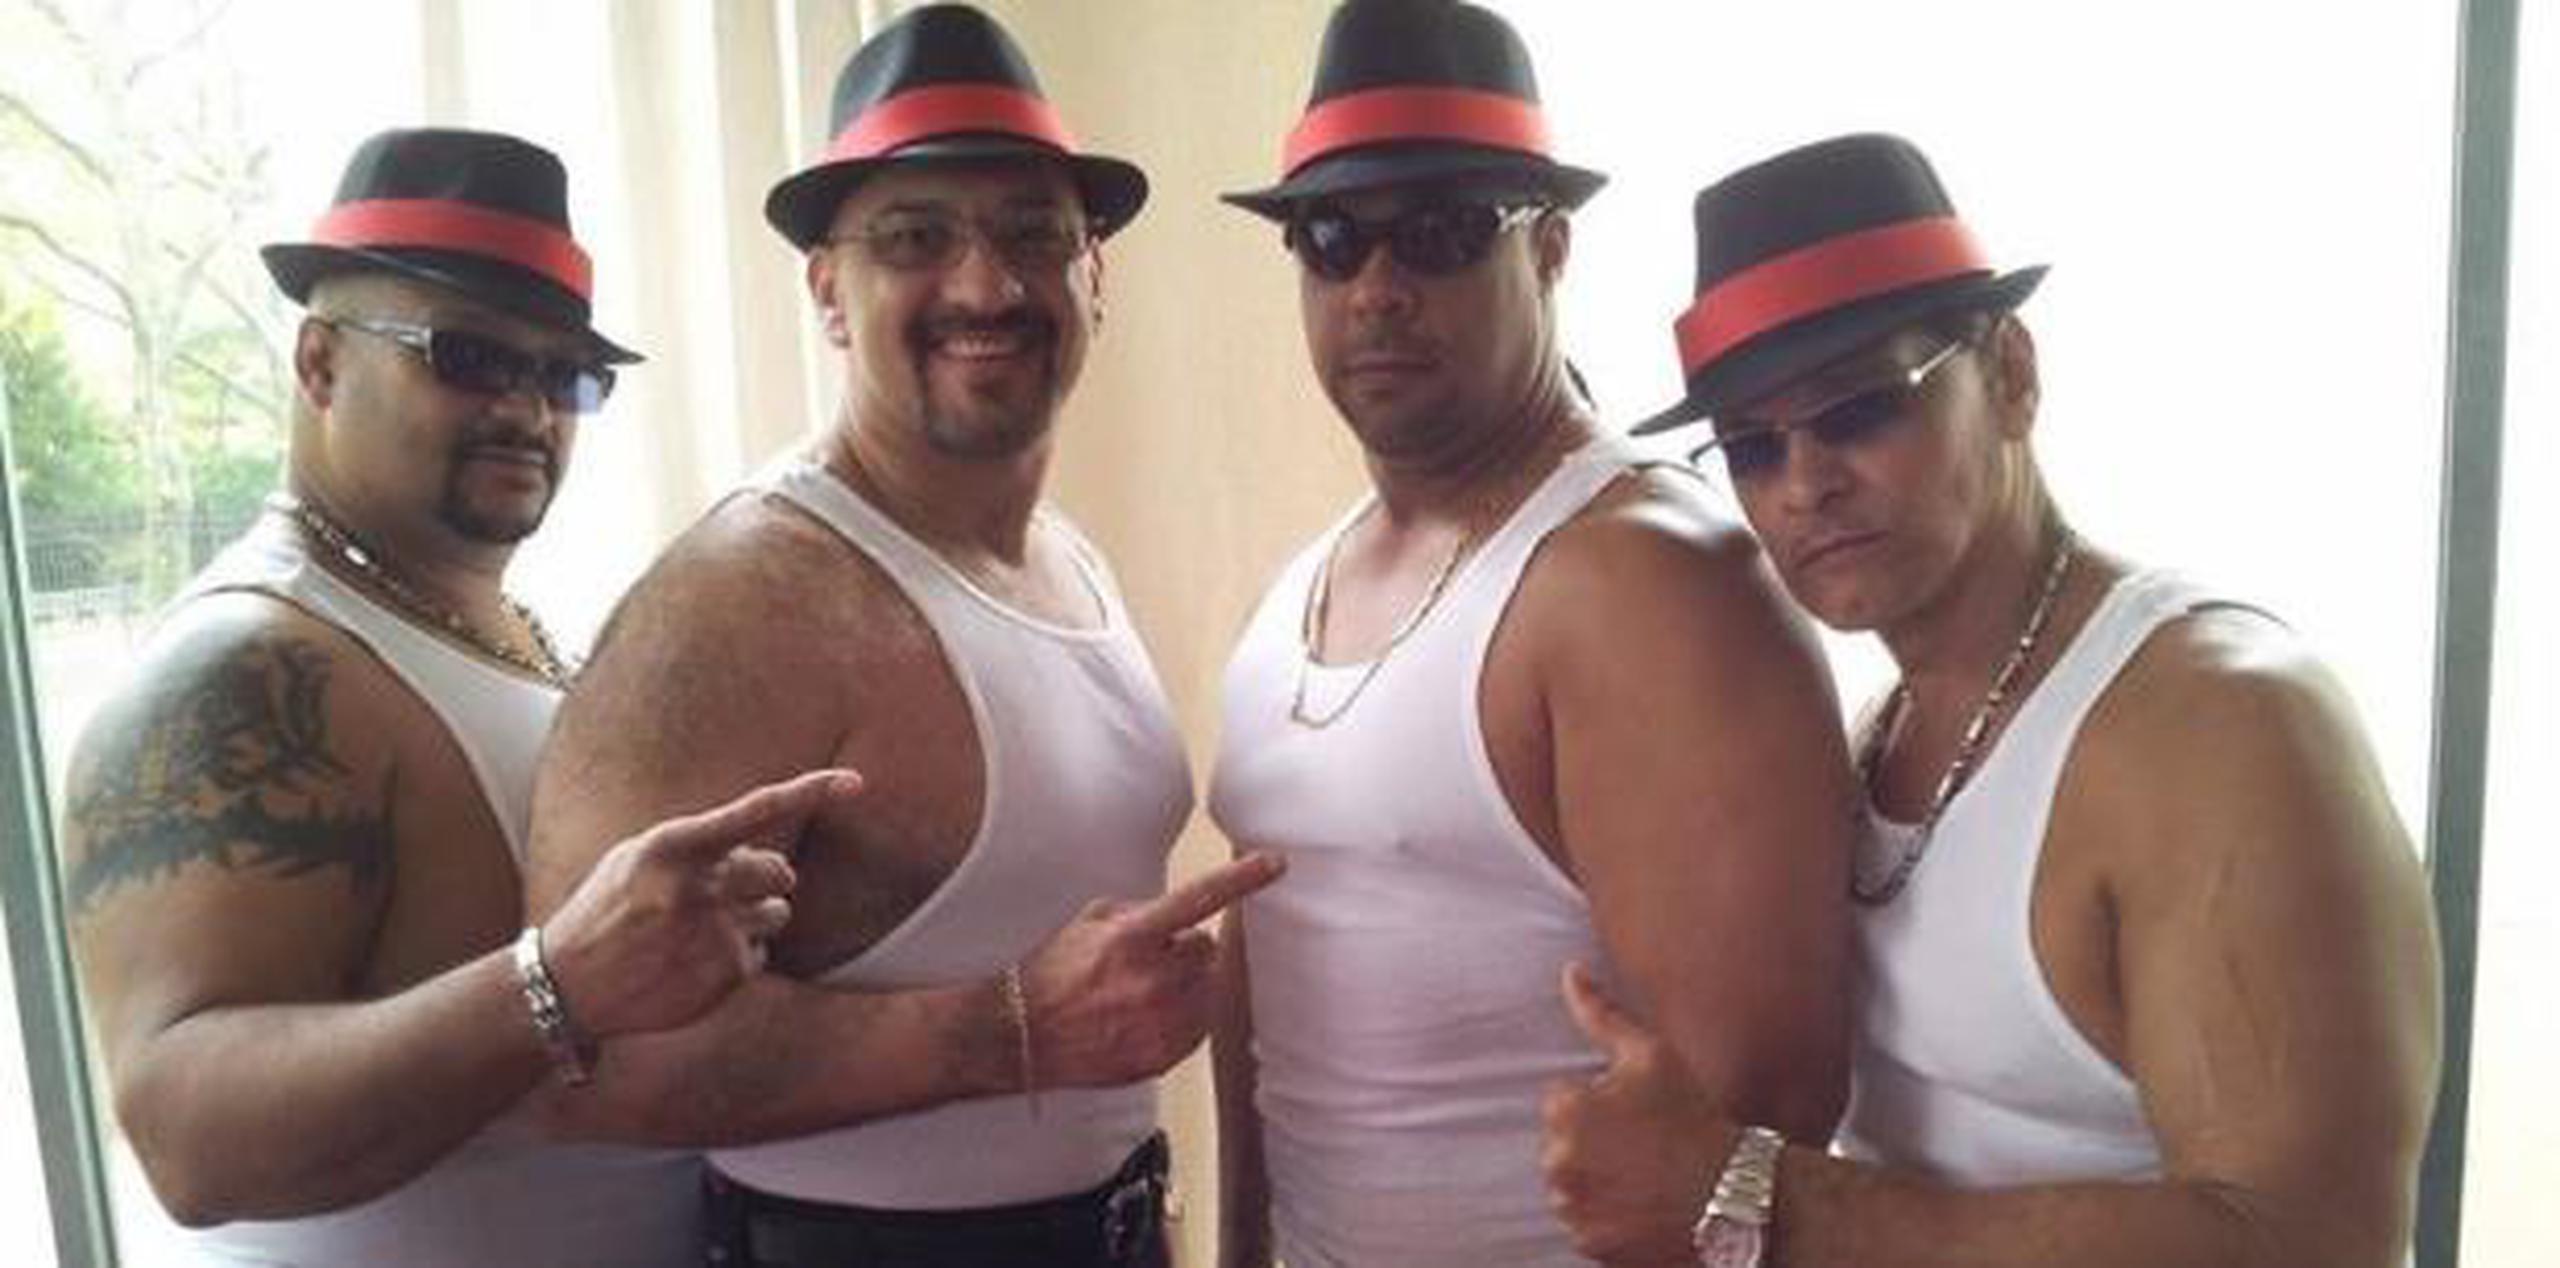 Talentos como el de ‘Los Boricuas’  Savio Vega, Miguel Pérez y Huracán Castillo serán parte de los luchadores que formarán parte del relanzamiento de la IWA. (Facebook / IWA)